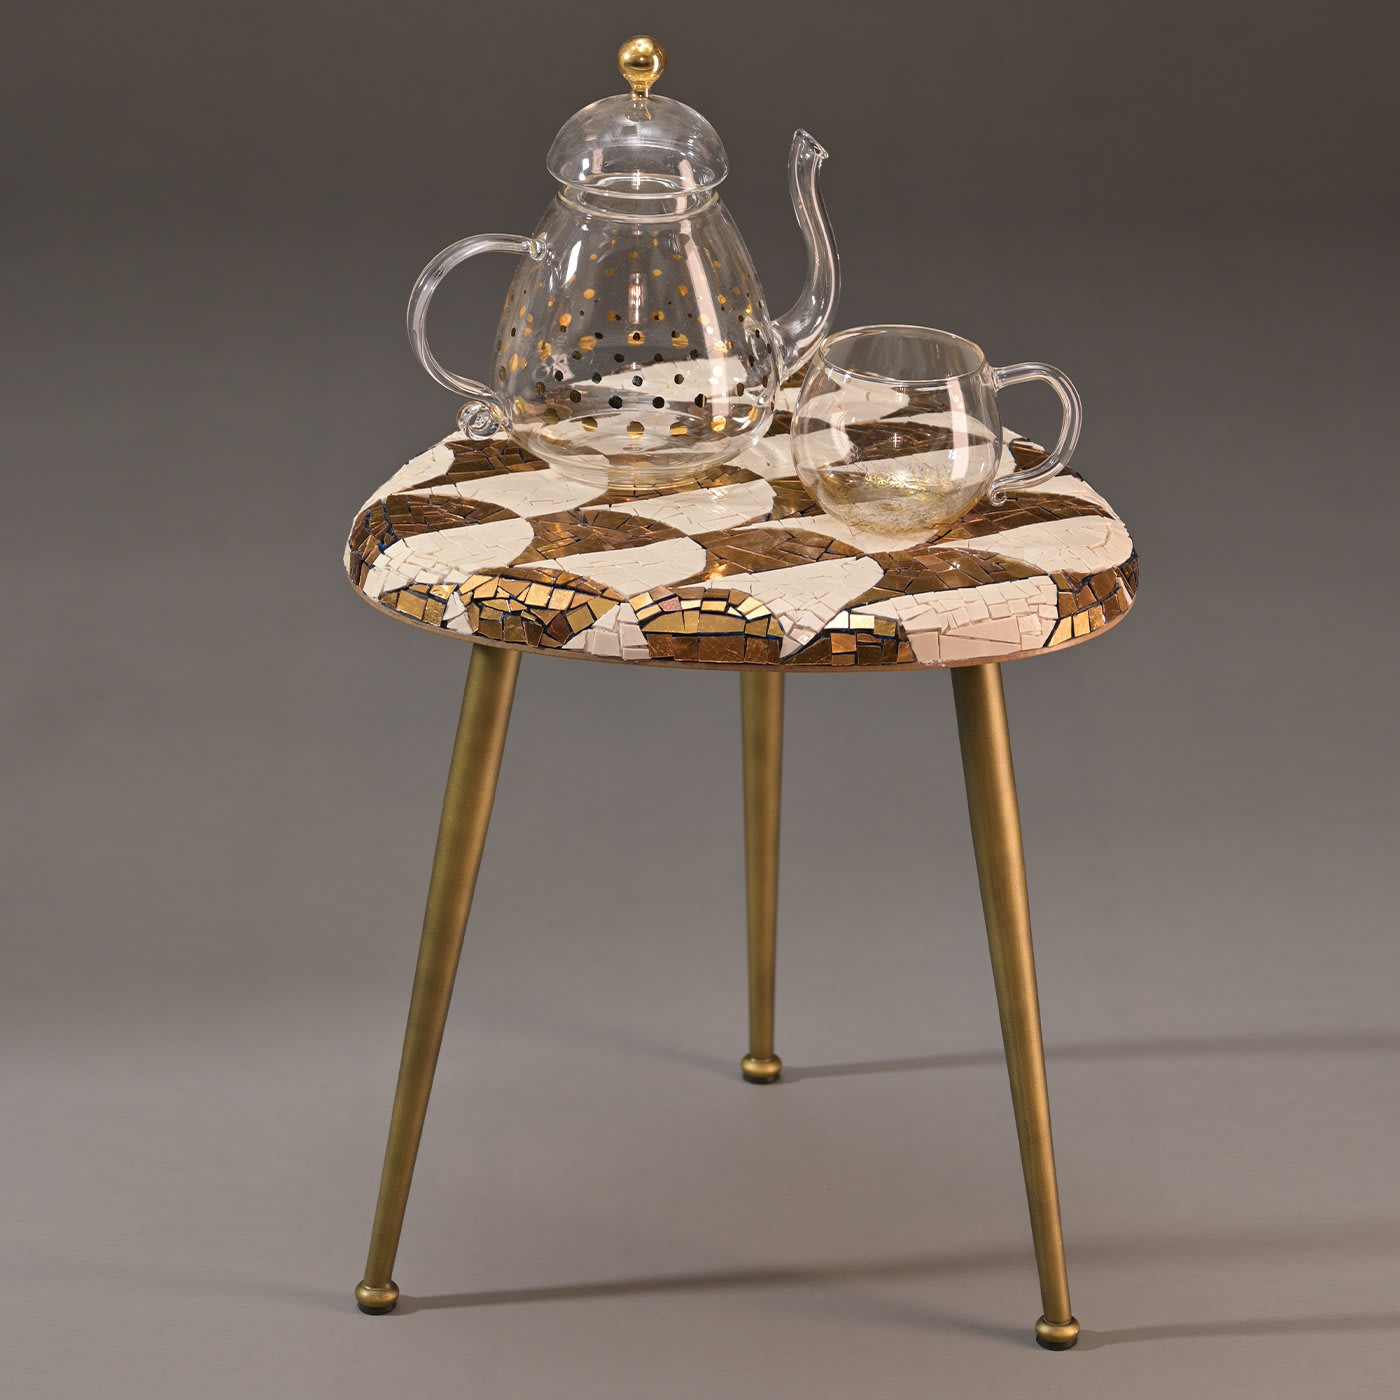 Casarialto Atelier Palmira coffee table by Michela Nardin - Casarialto